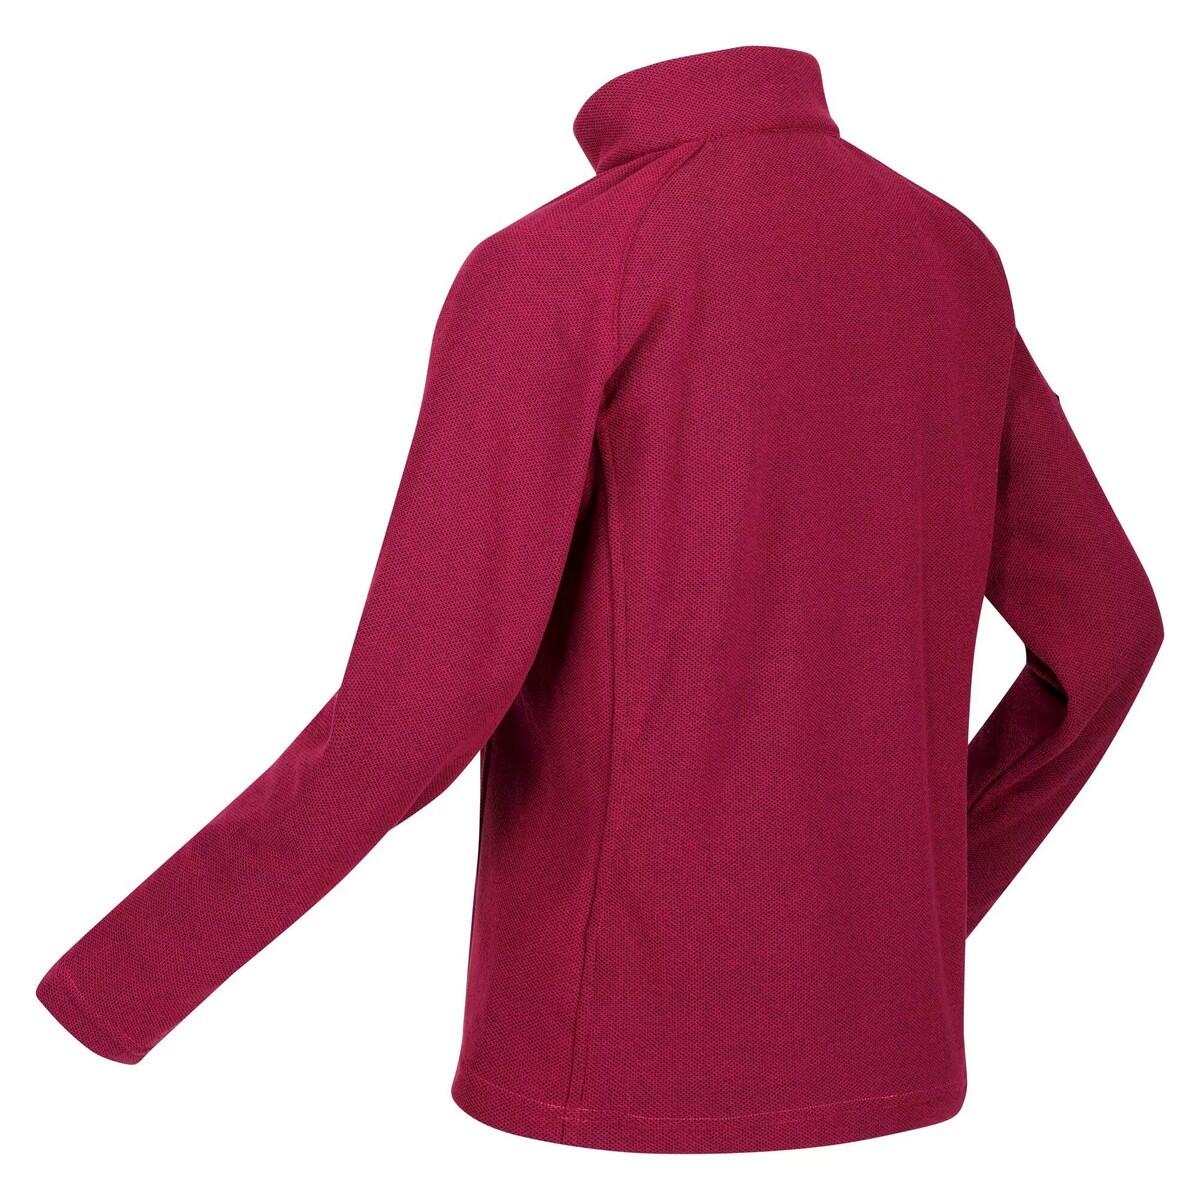 Womens/Ladies Kenger II Quarter Zip Fleece Top (Berry Pink) 4/5